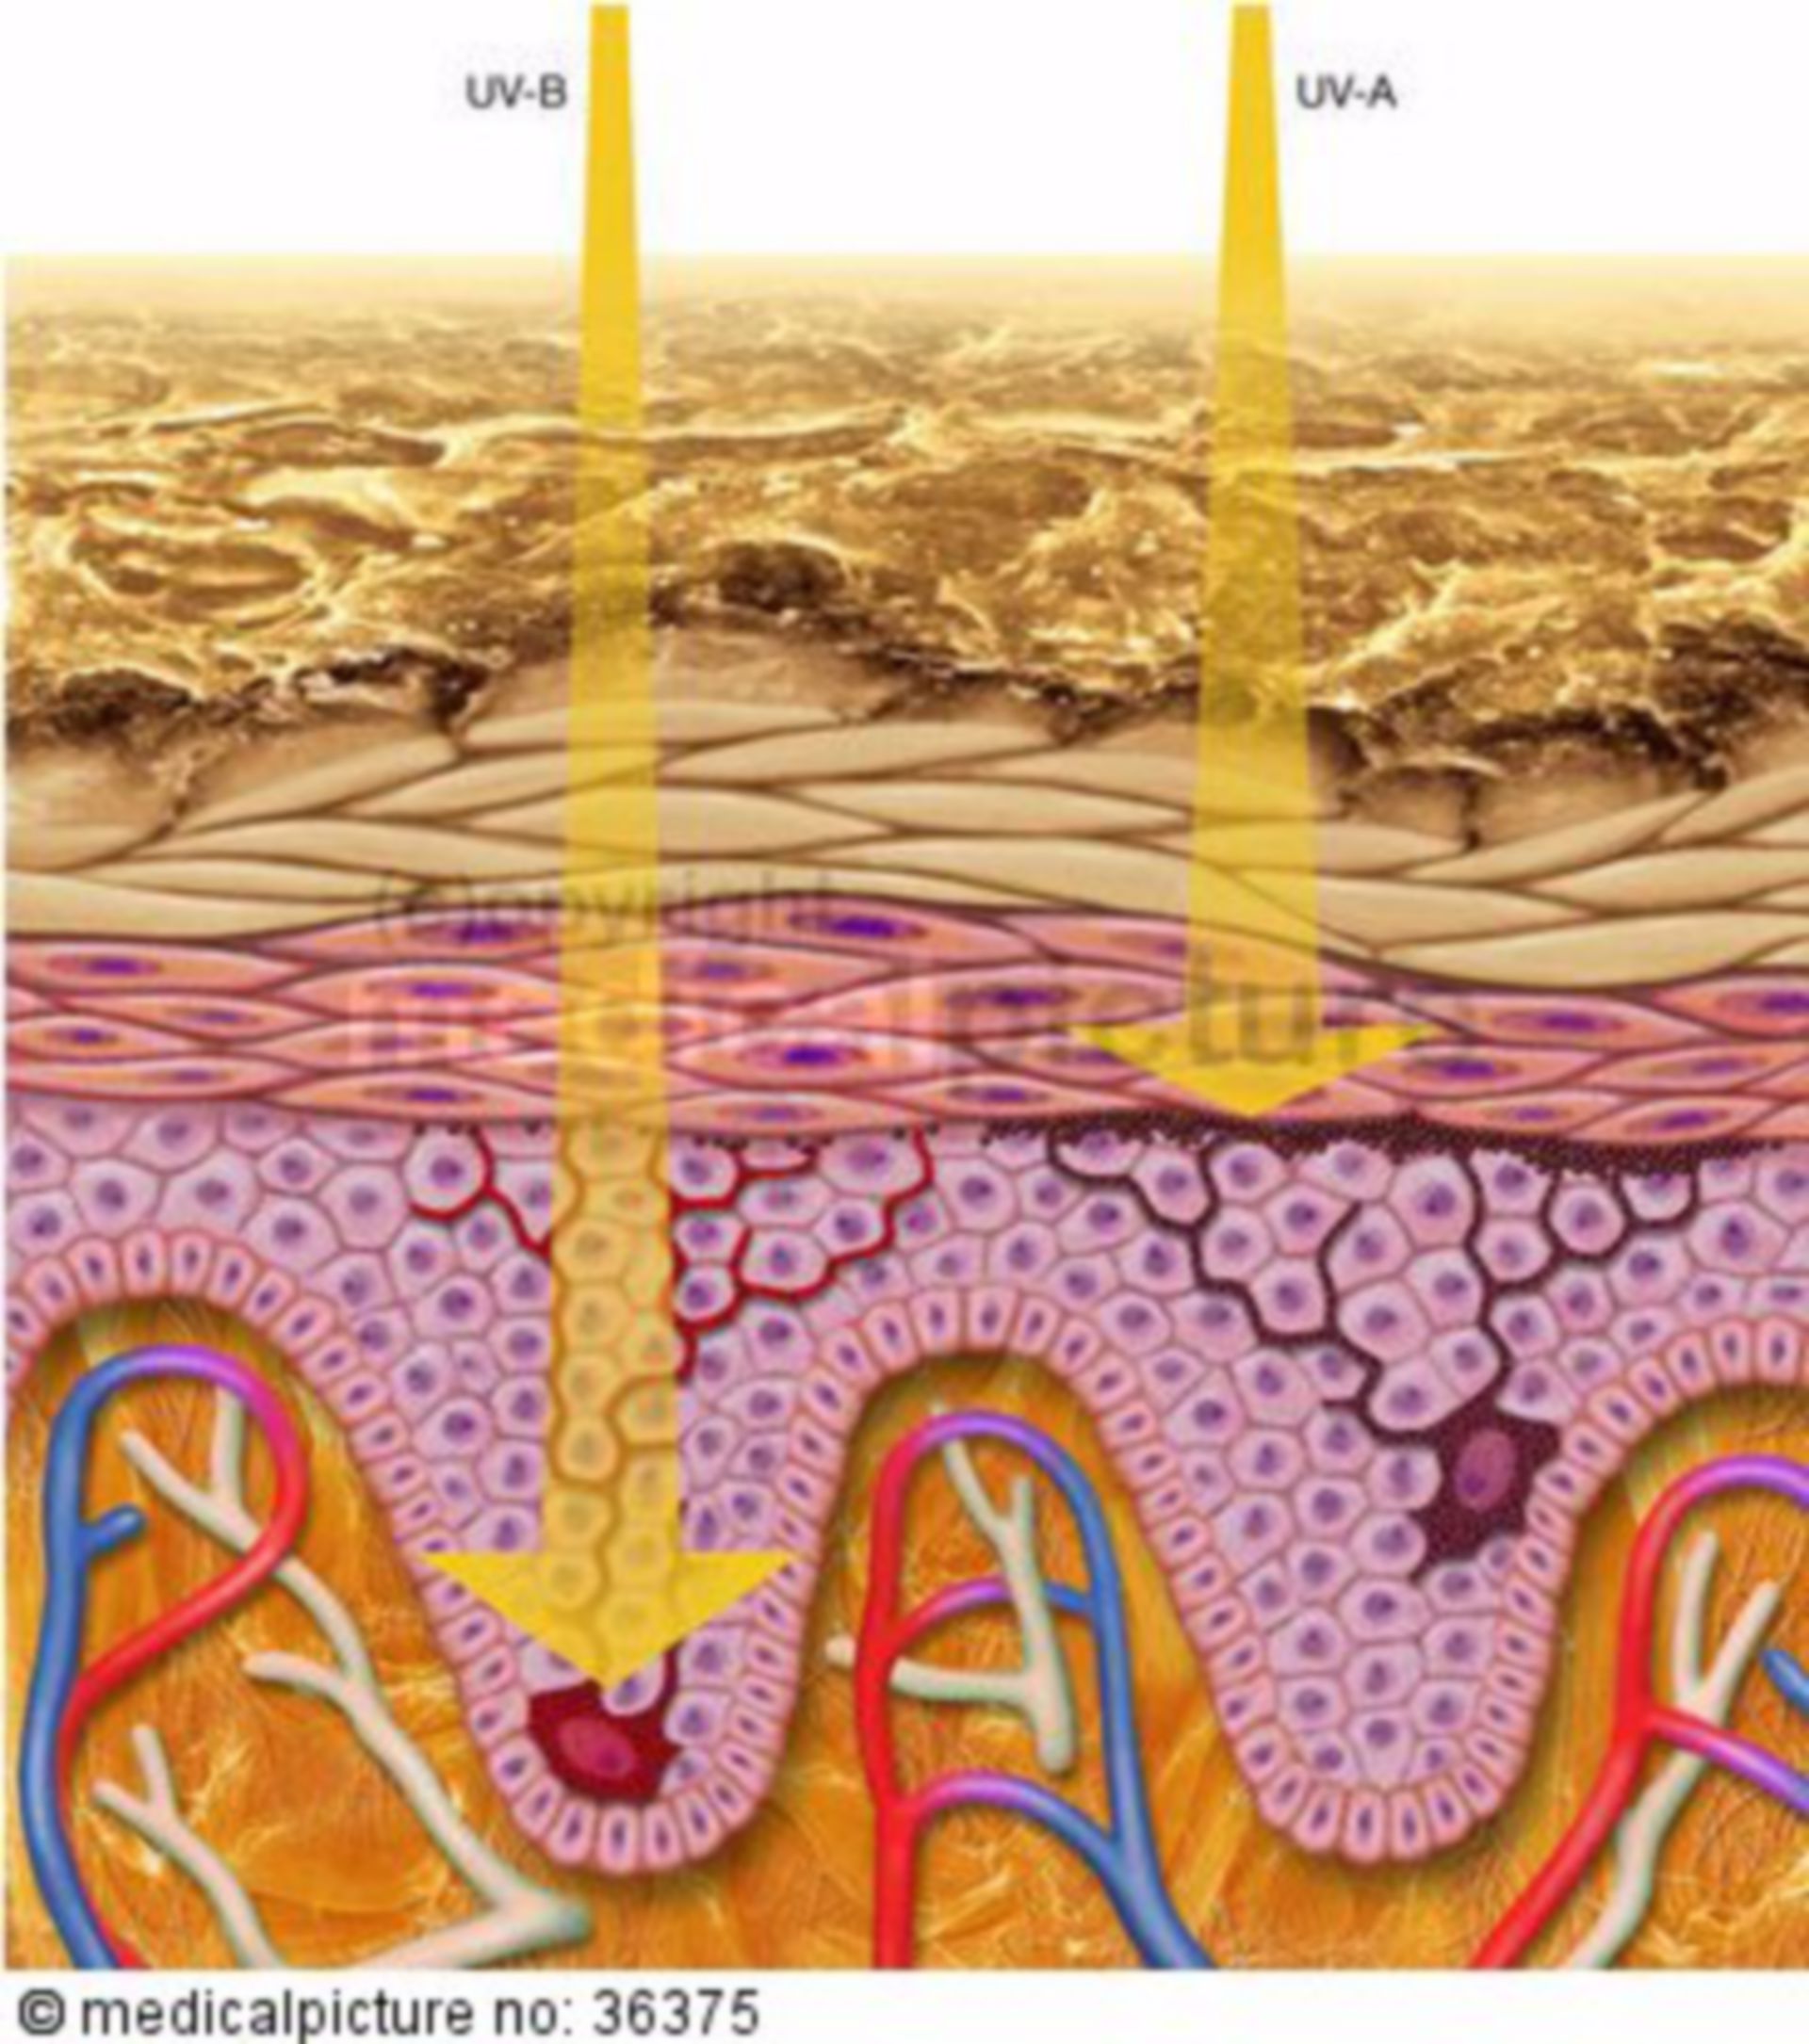  Tiefenwirkung von UV-B und UV-A Strahlen in der Haut 
